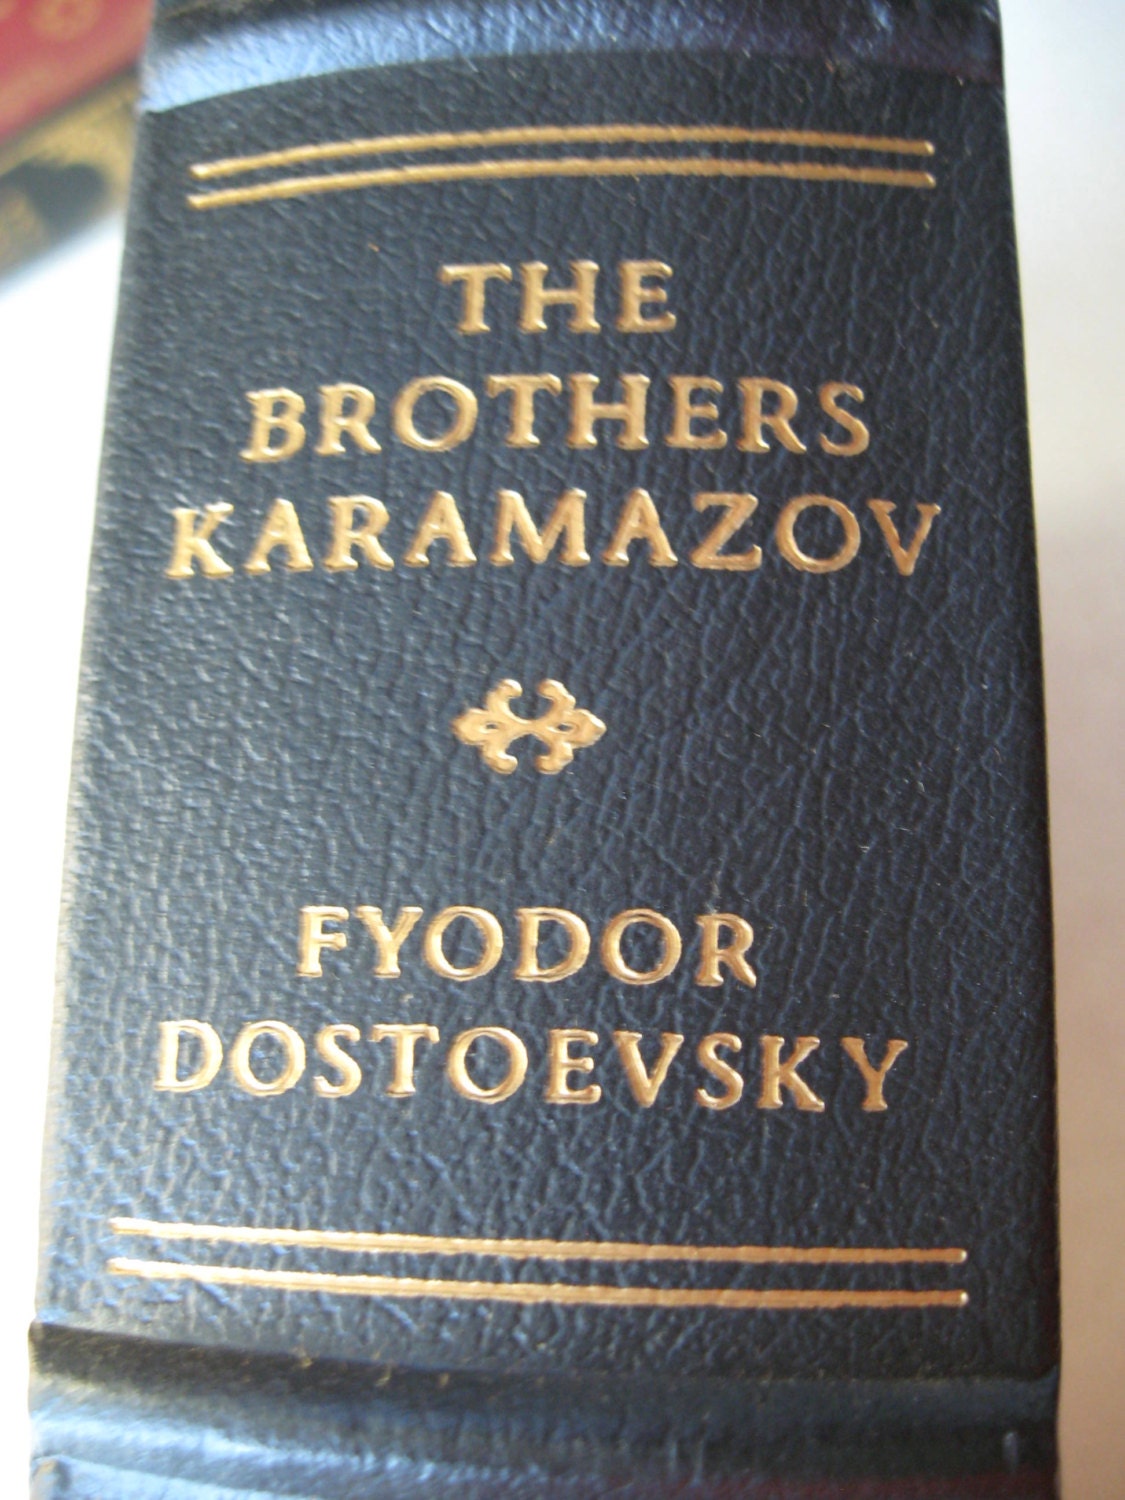 the brothers karamazov by fyodor dostoyevsky